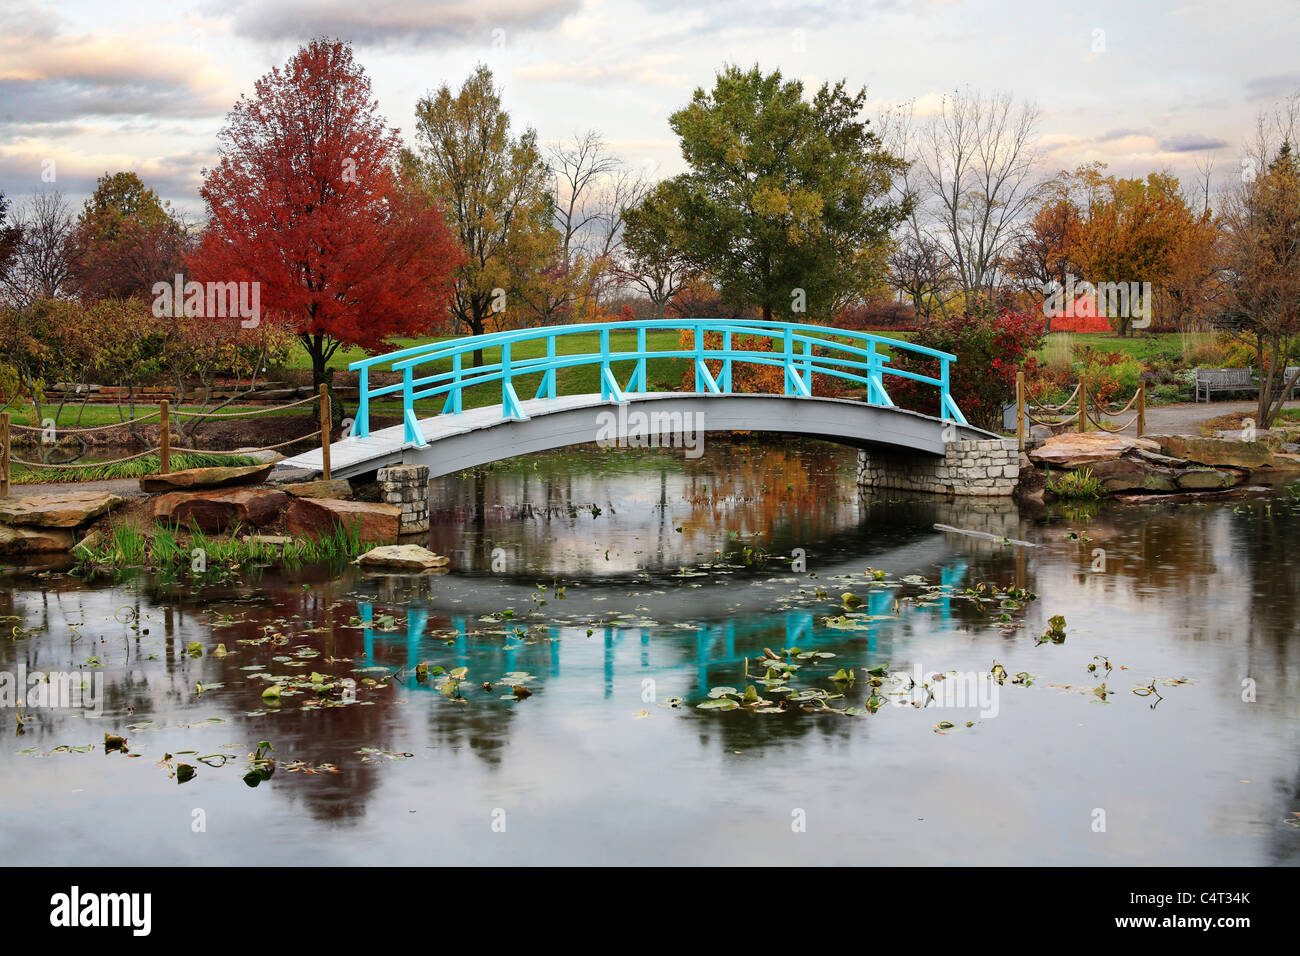 Una scena pastorale di un piede giapponese ponte su un tranquillo laghetto in un giorno di pioggia in autunno, Southwestern Ohio, Stati Uniti d'America Foto Stock